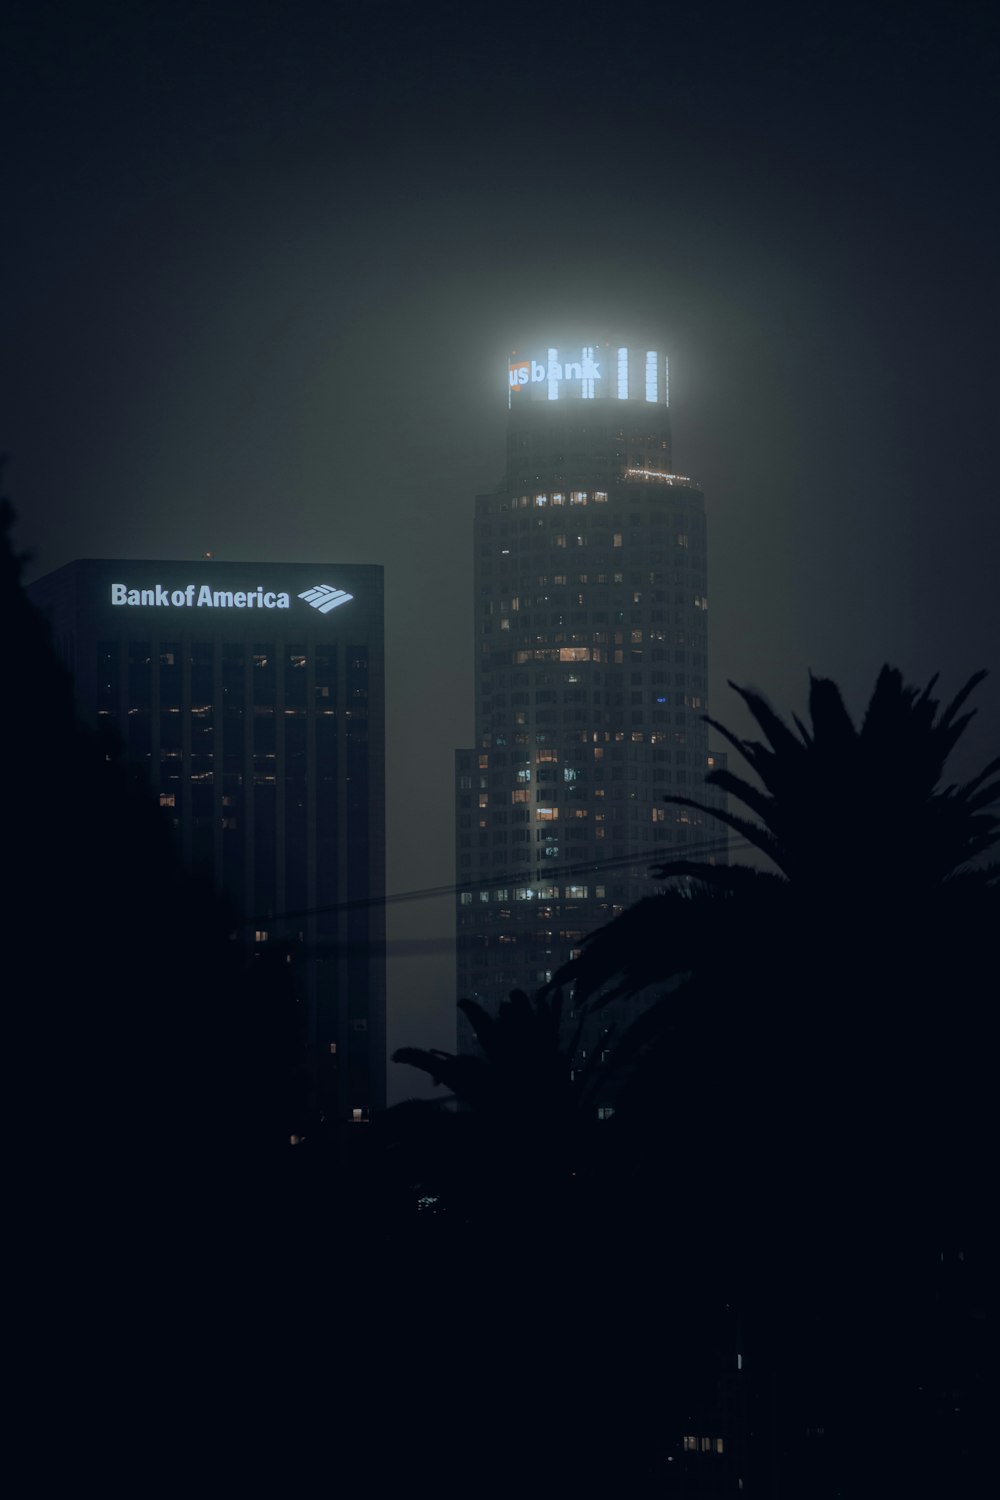 Le bâtiment de la Bank of America est illuminé la nuit